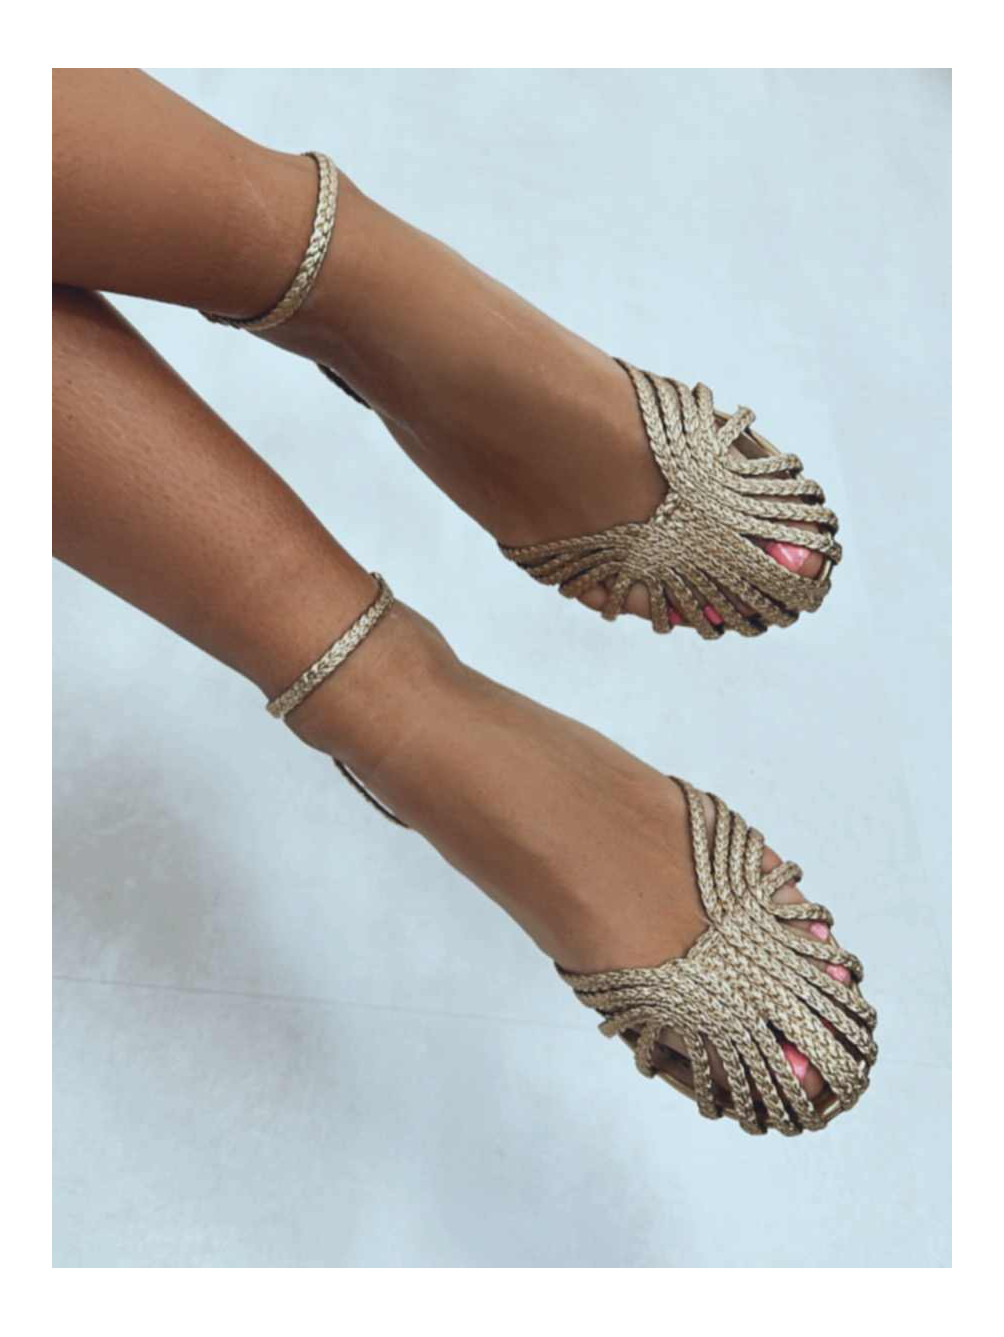 Sandalias trenzadas color oro, de pulsera en tobillos, moda de zapatos baratos mujer, Mariquita Trasquilá